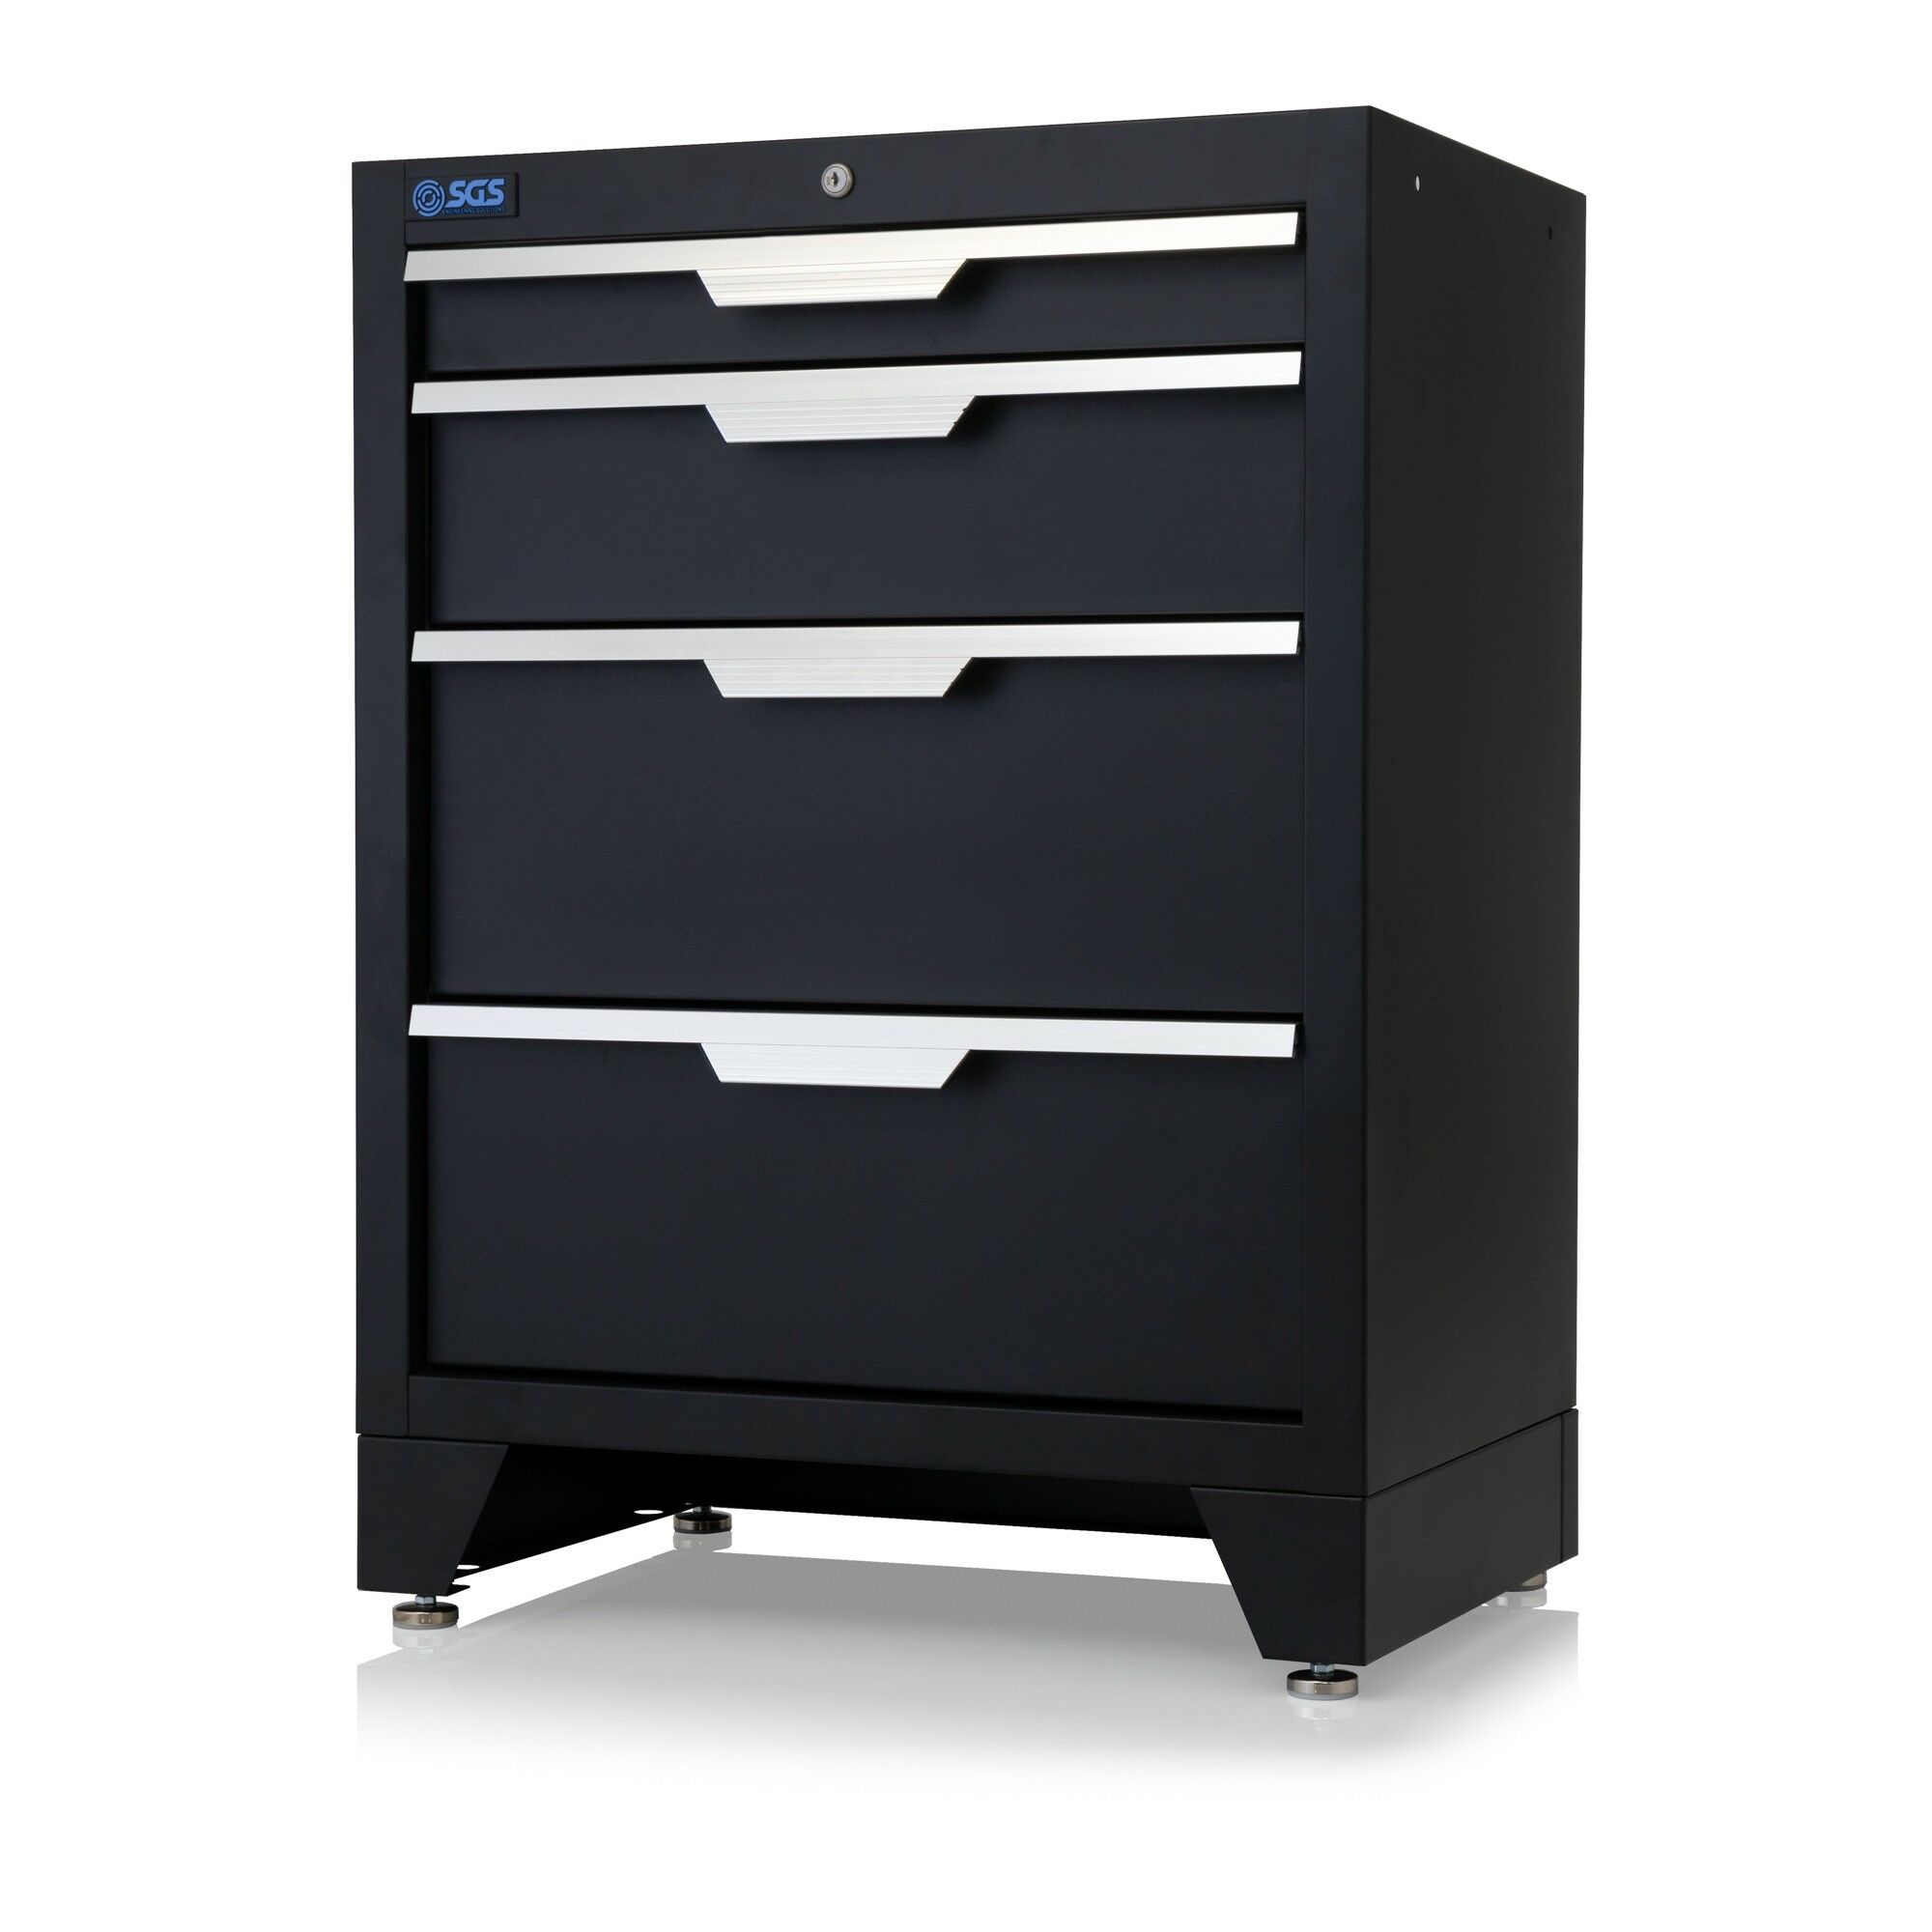 SGS Garage System 4 Drawer Cabinet